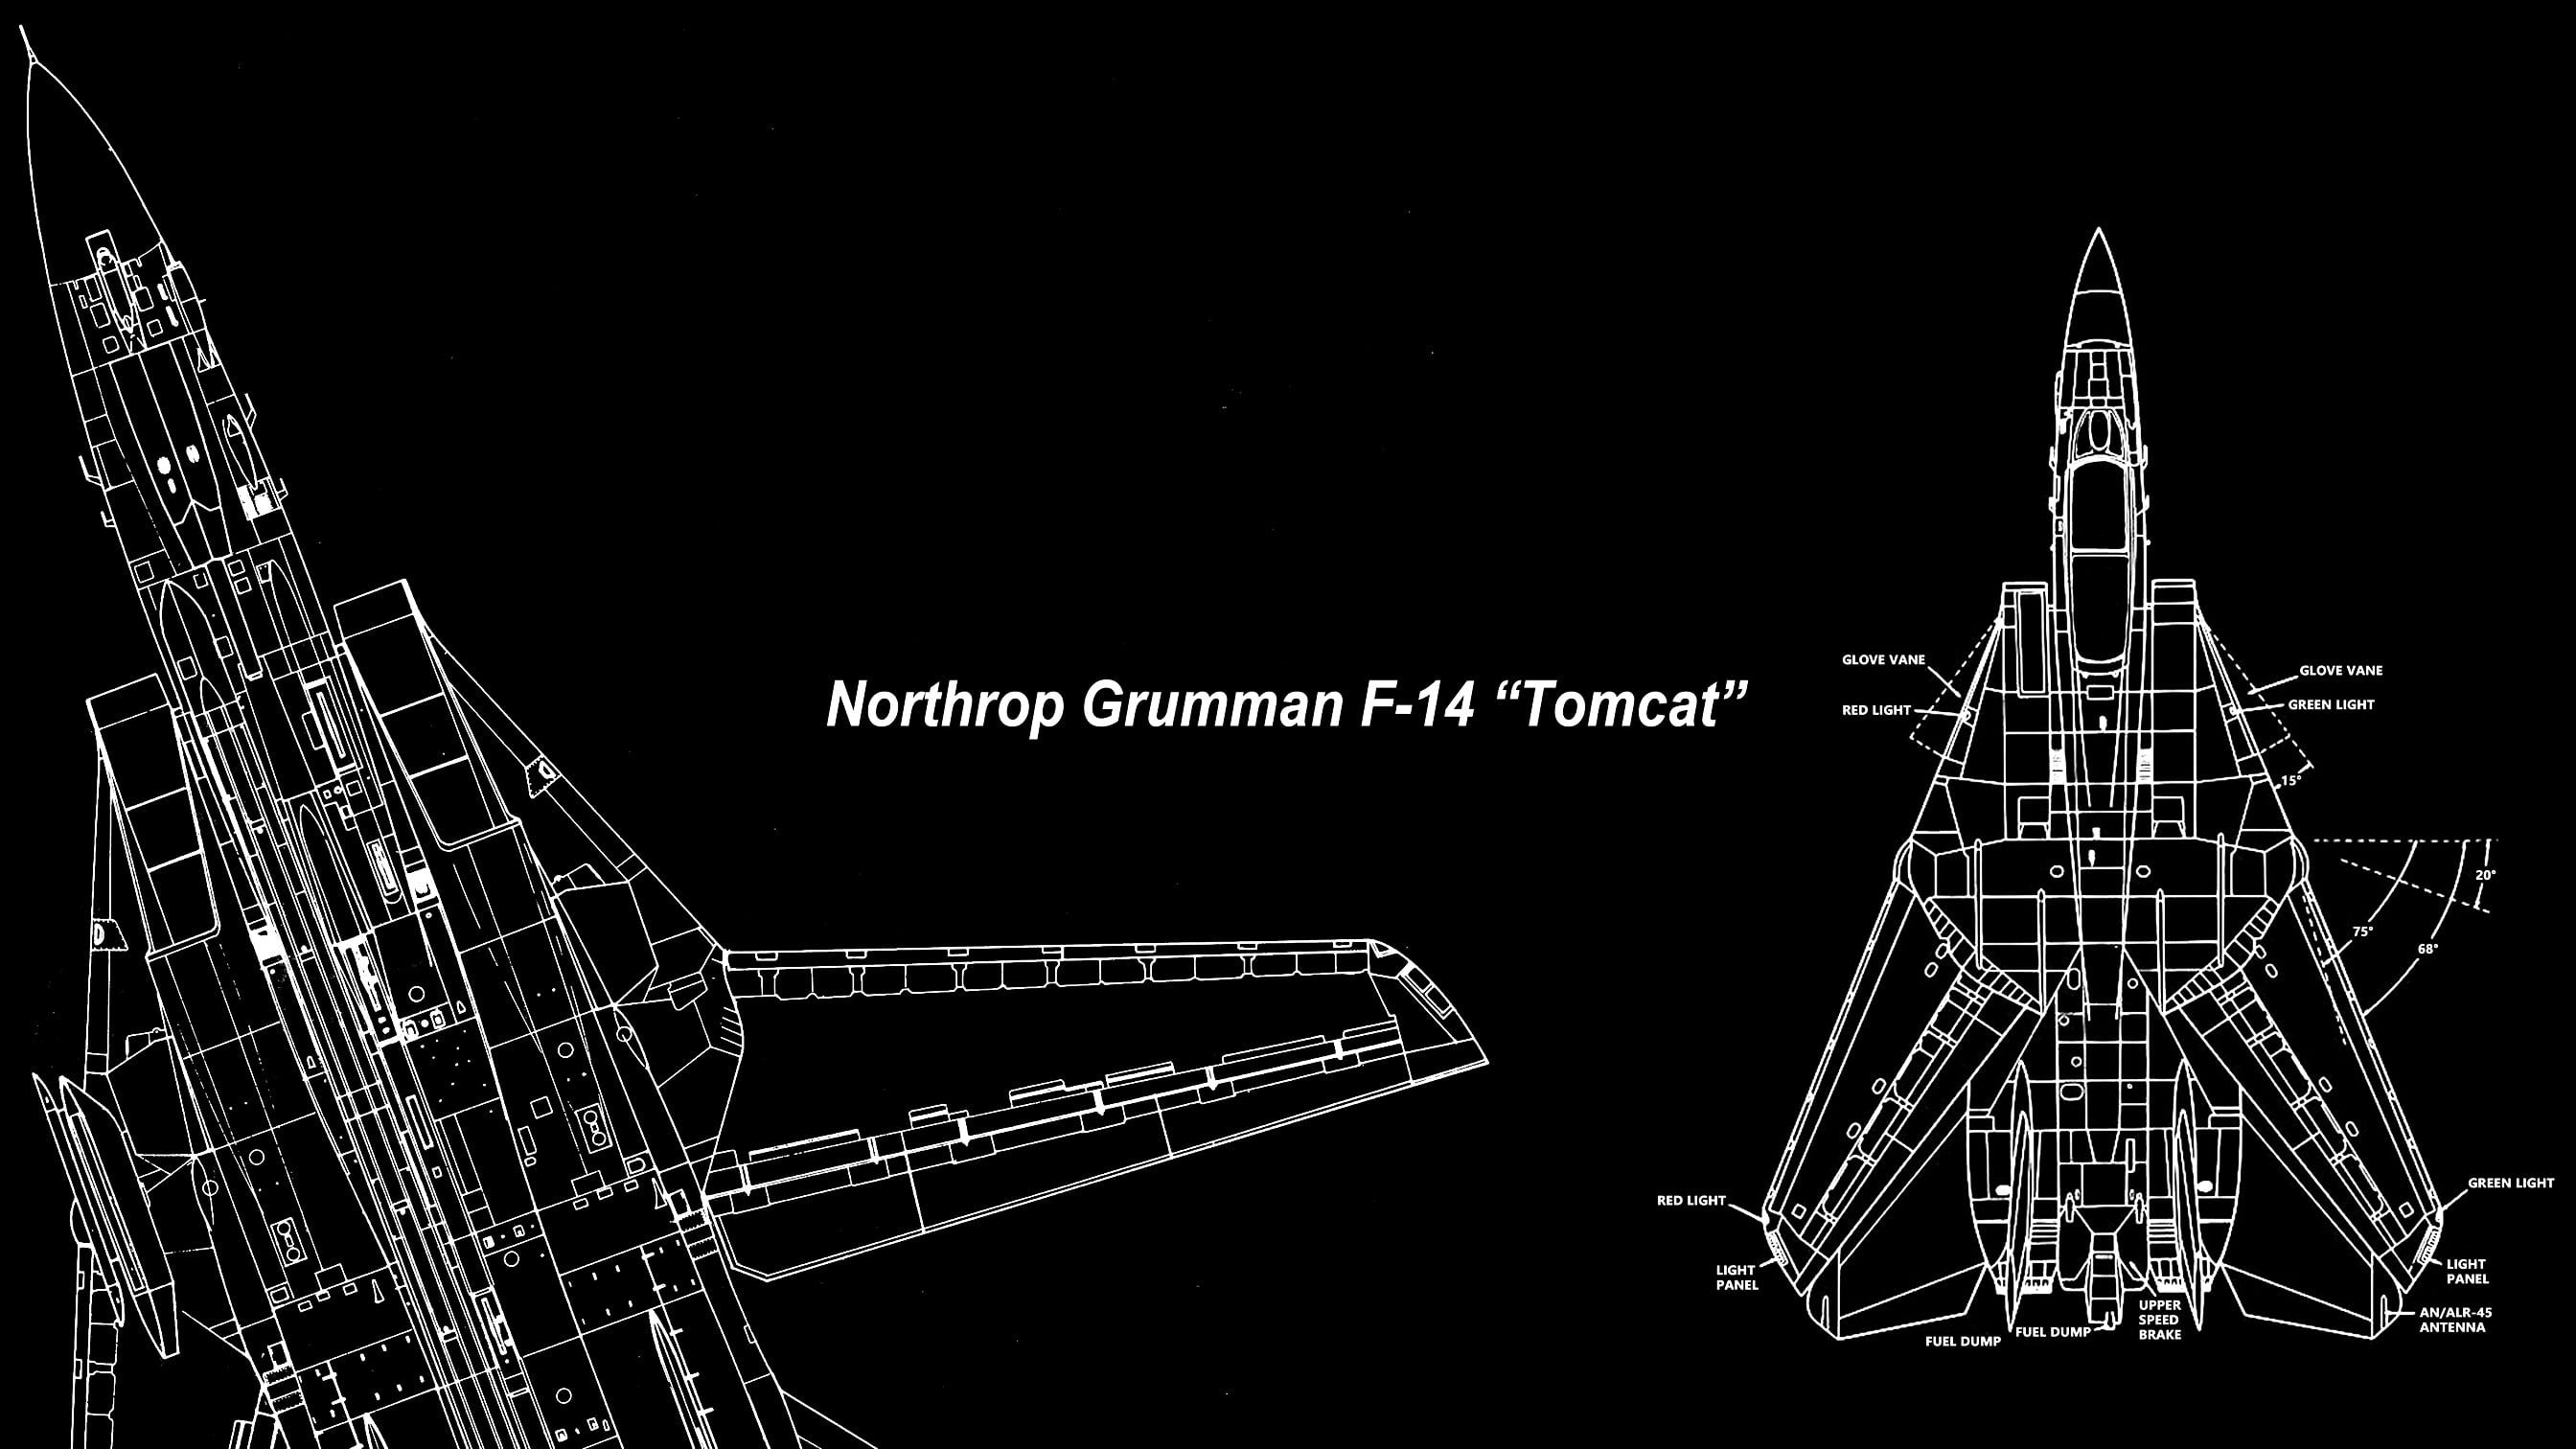 F-14 Tomcat, Grumman F-14 Tomcat, jet fighter, navy, United States Navy